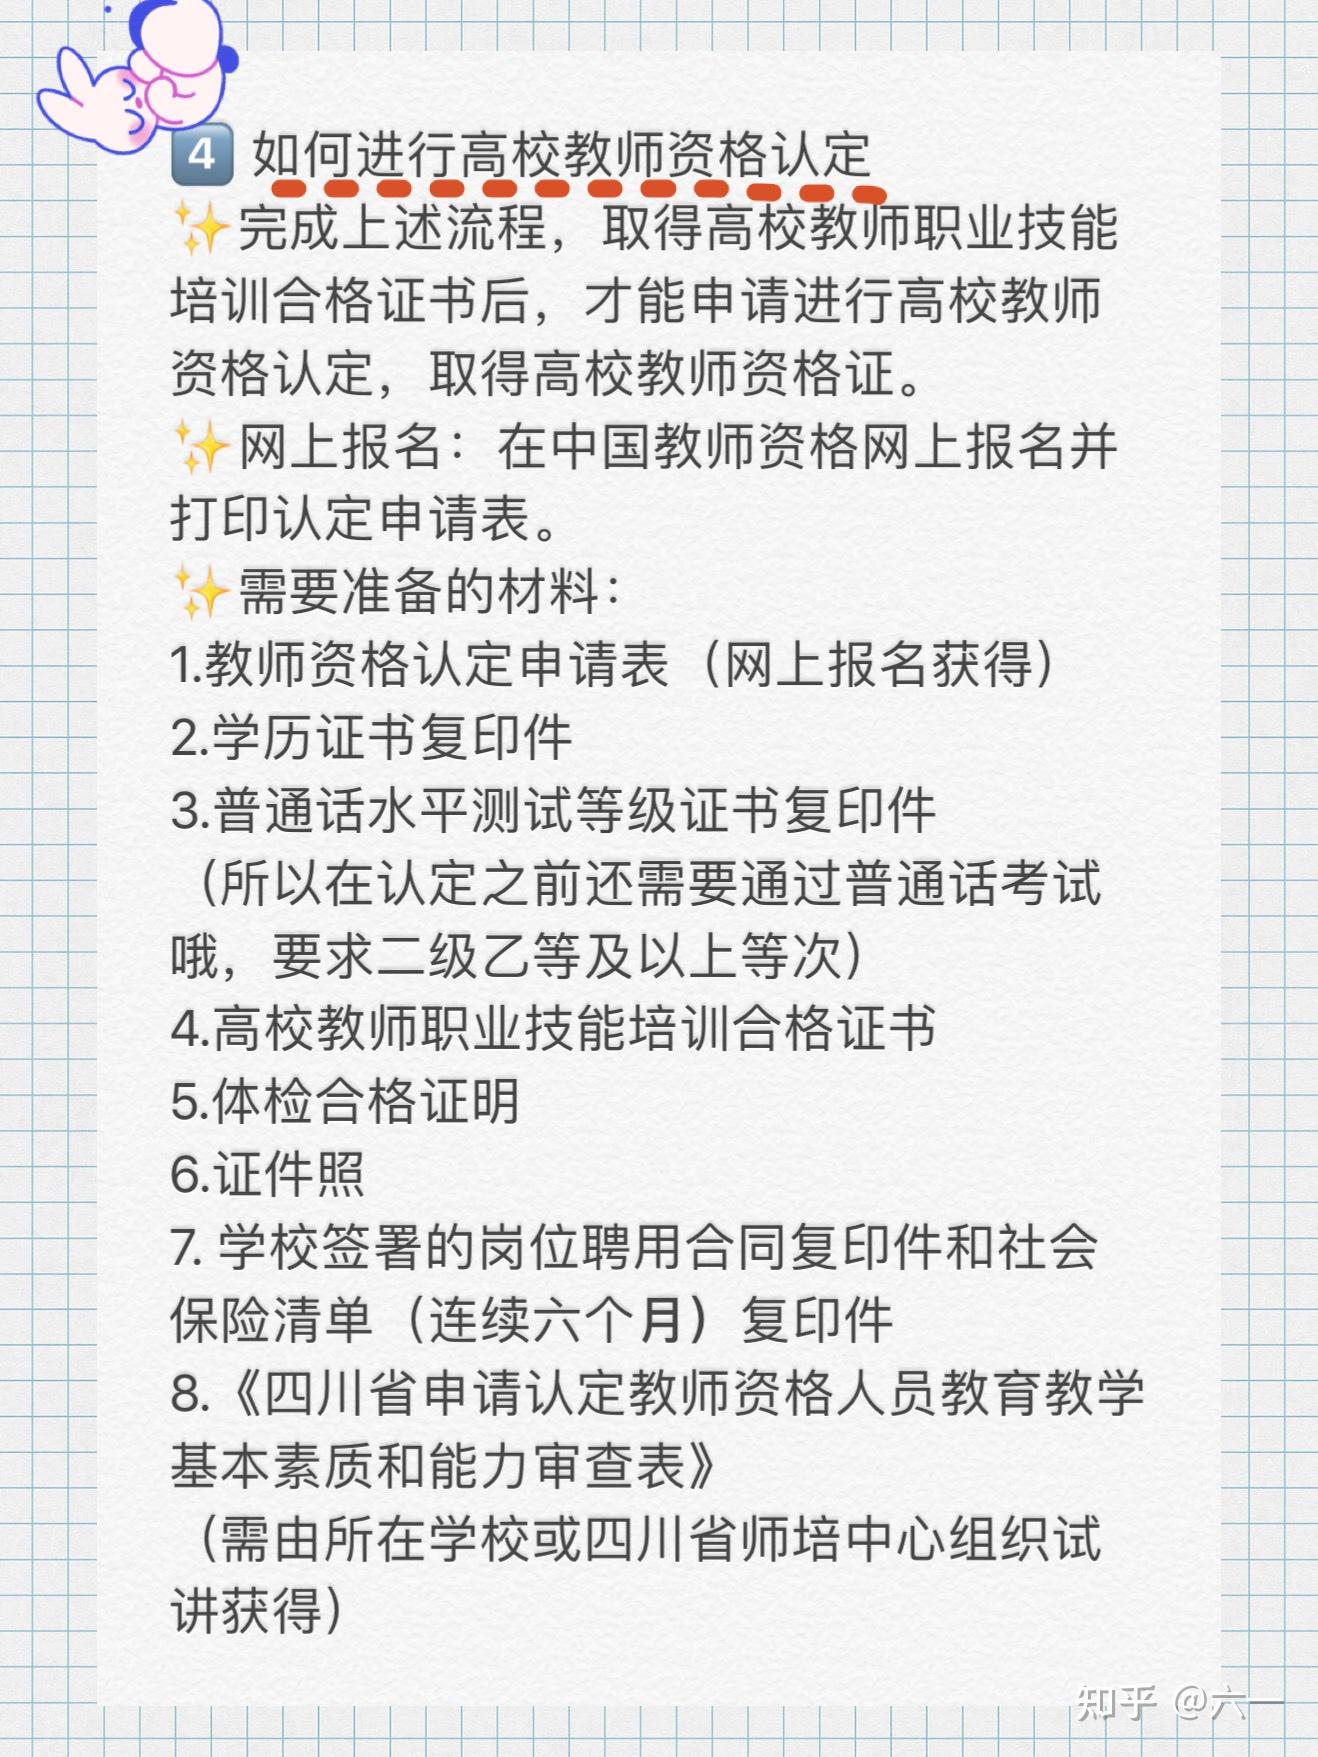 广东省考明日开始报名 报名流程你记住了吗 - 广东公务员考试网